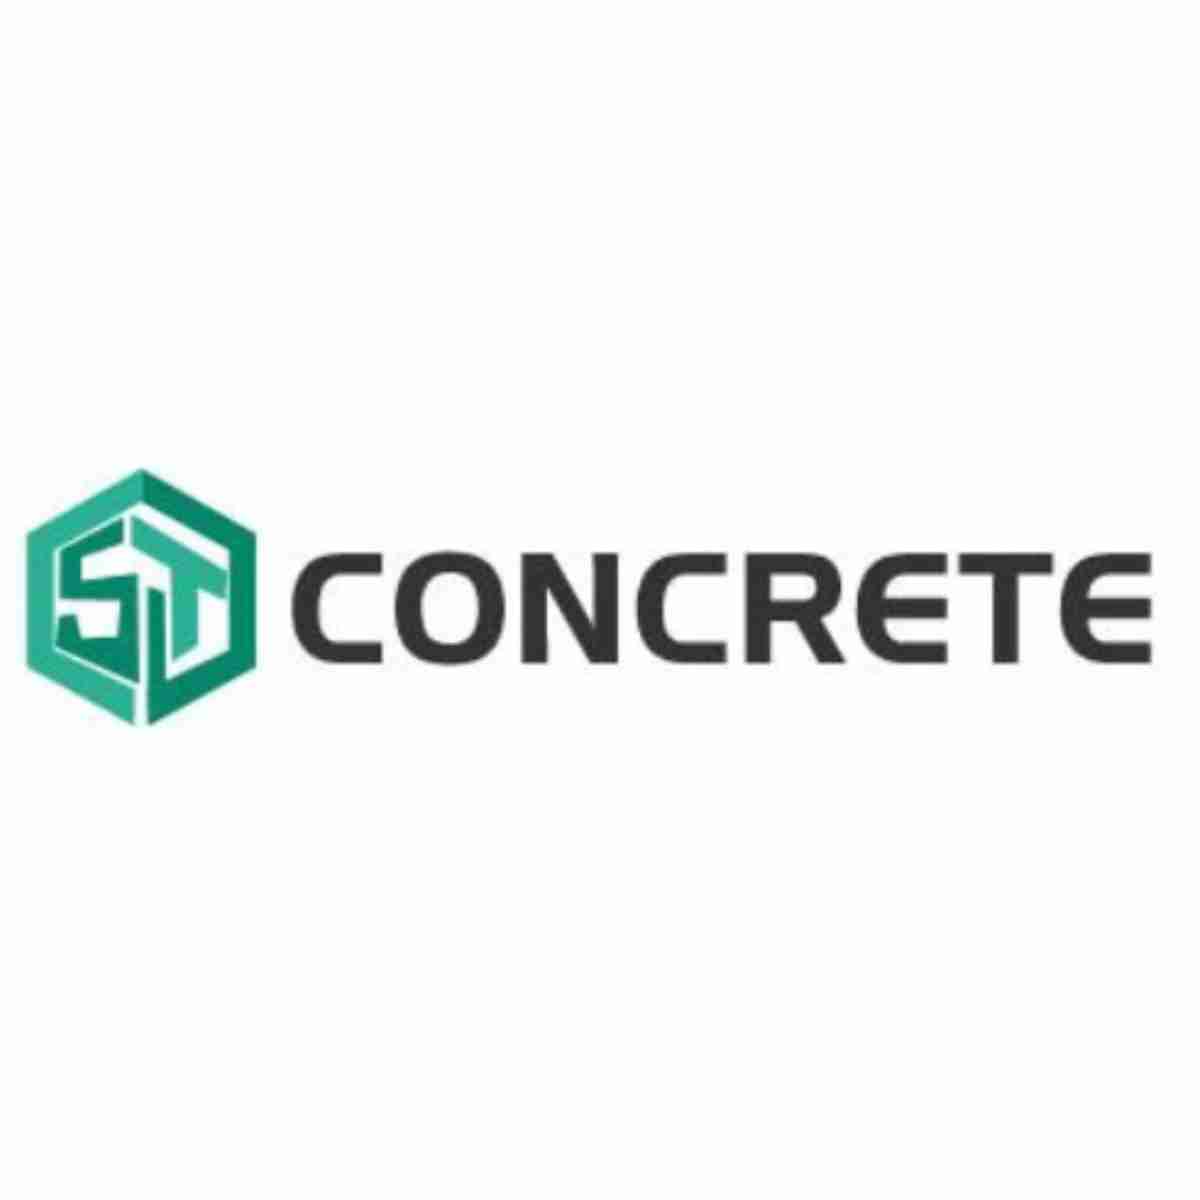 ST Concrete